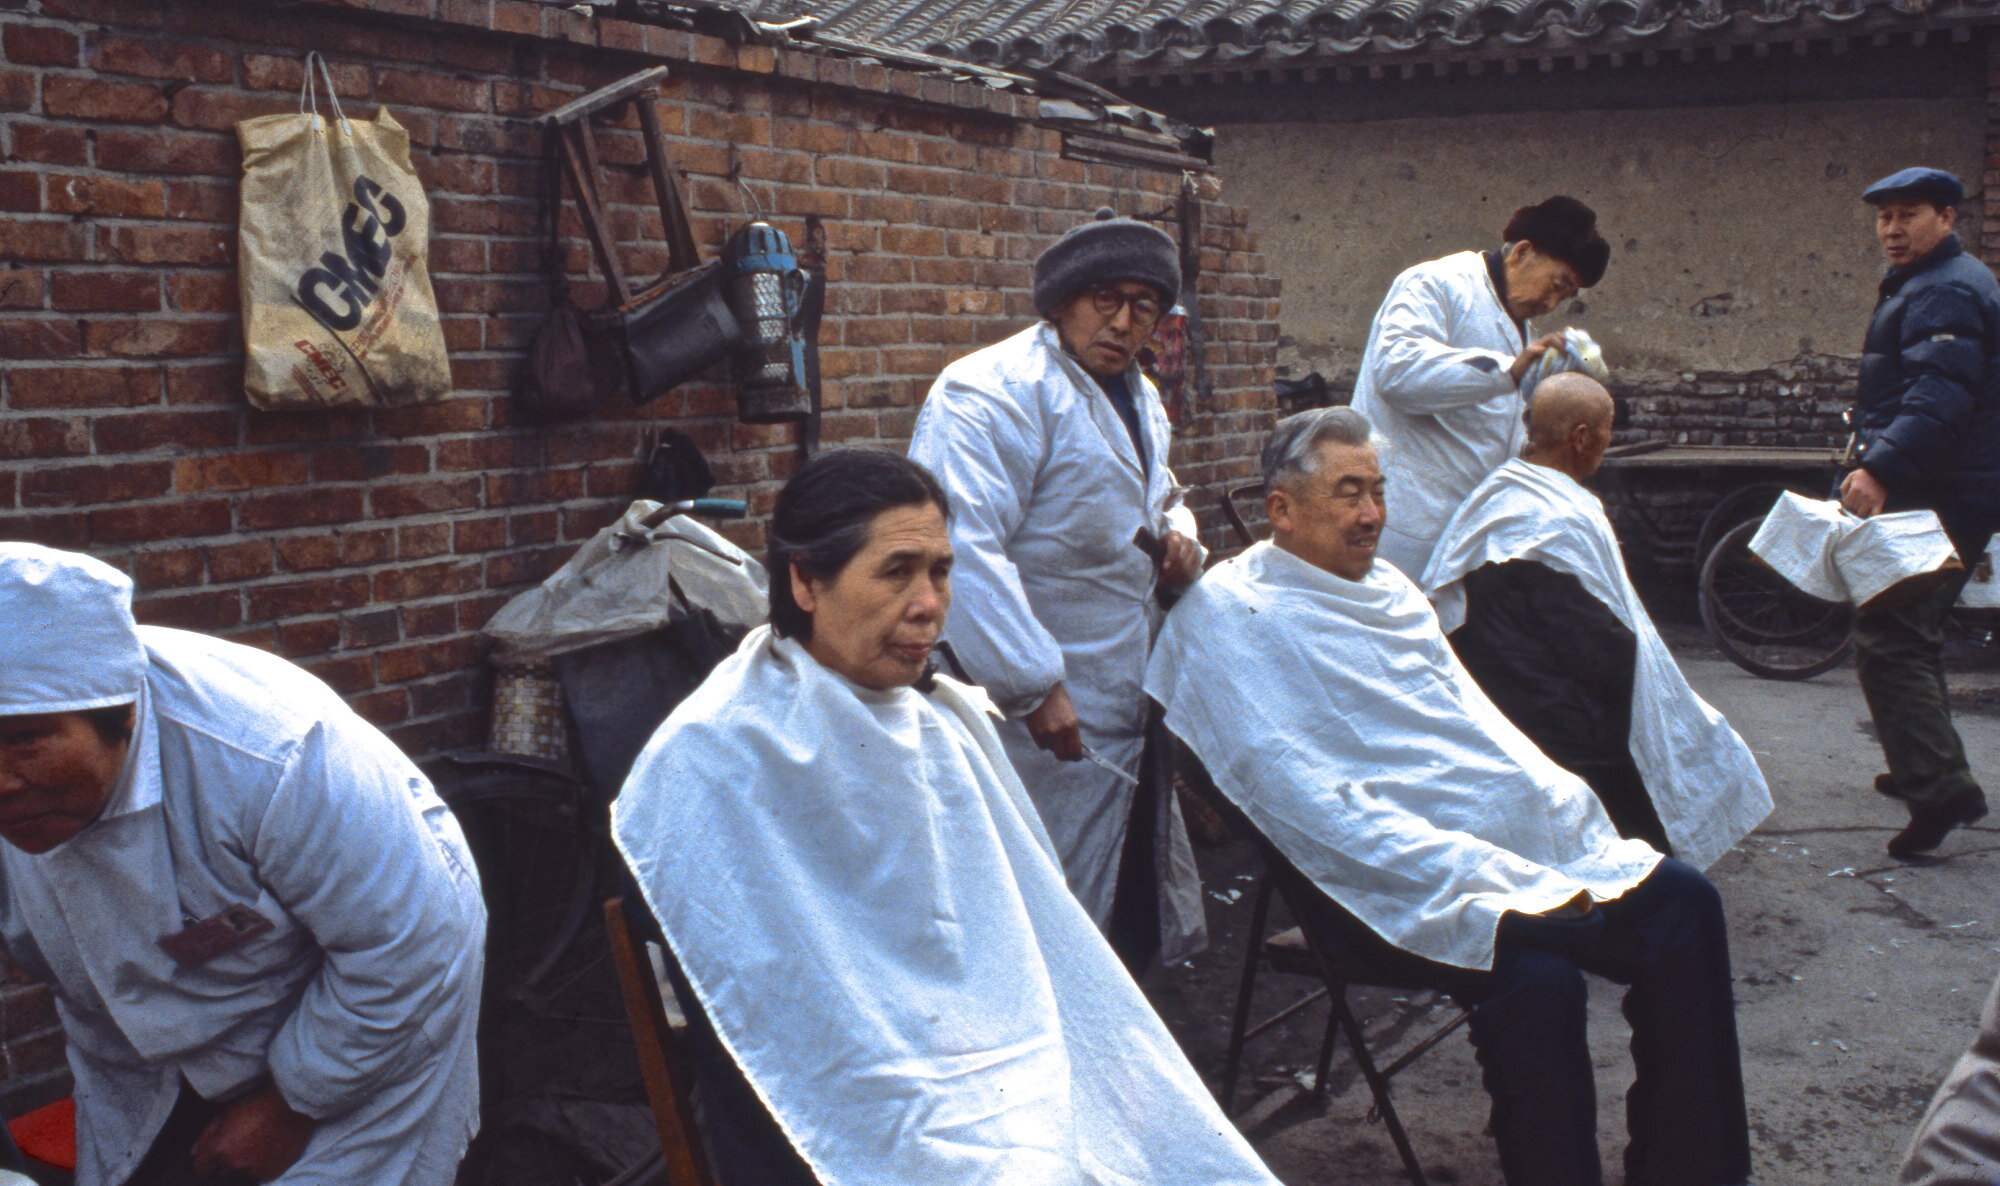 Open-air barber shop. Chongqing, China.